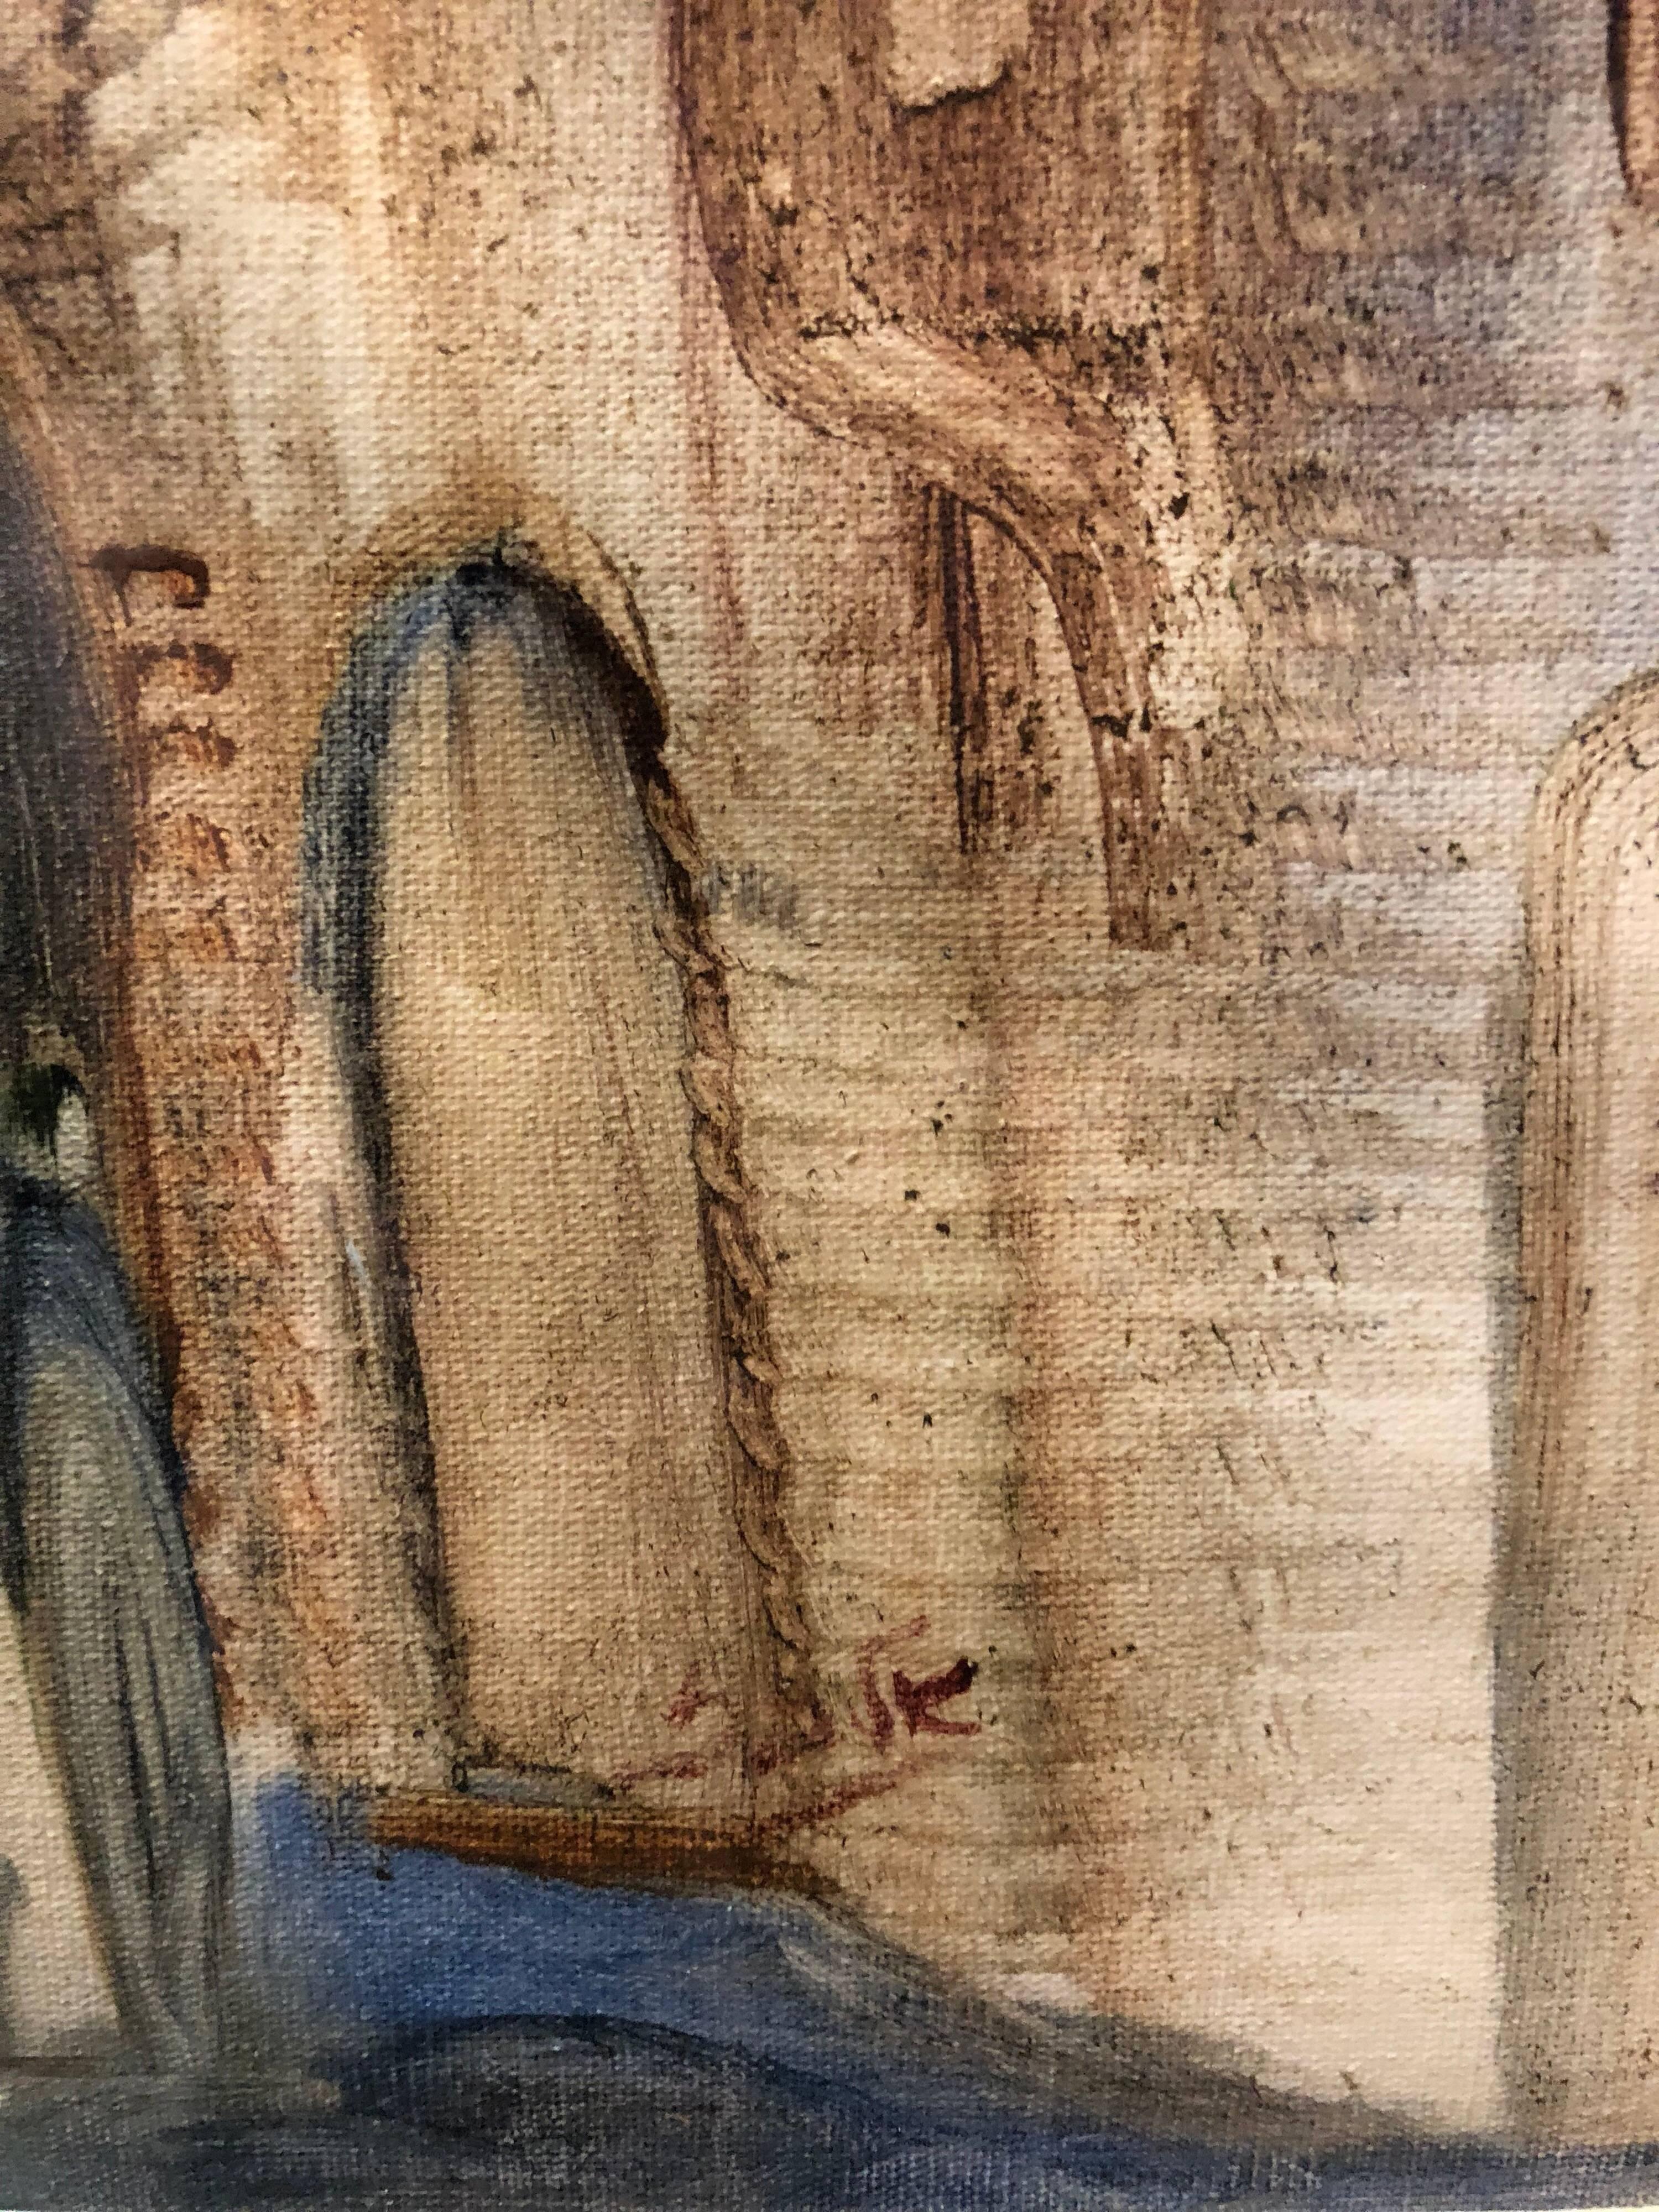 In diesem Gemälde verwendet der Künstler gestische Pinselstriche, die eine Verzerrung und Übertreibung für eine emotionale Wirkung bewirken. Andre Elbaz verwendet als Motiv Figuren, die in der Altstadt von Jerusalem spazieren gehen.

André Elbaz